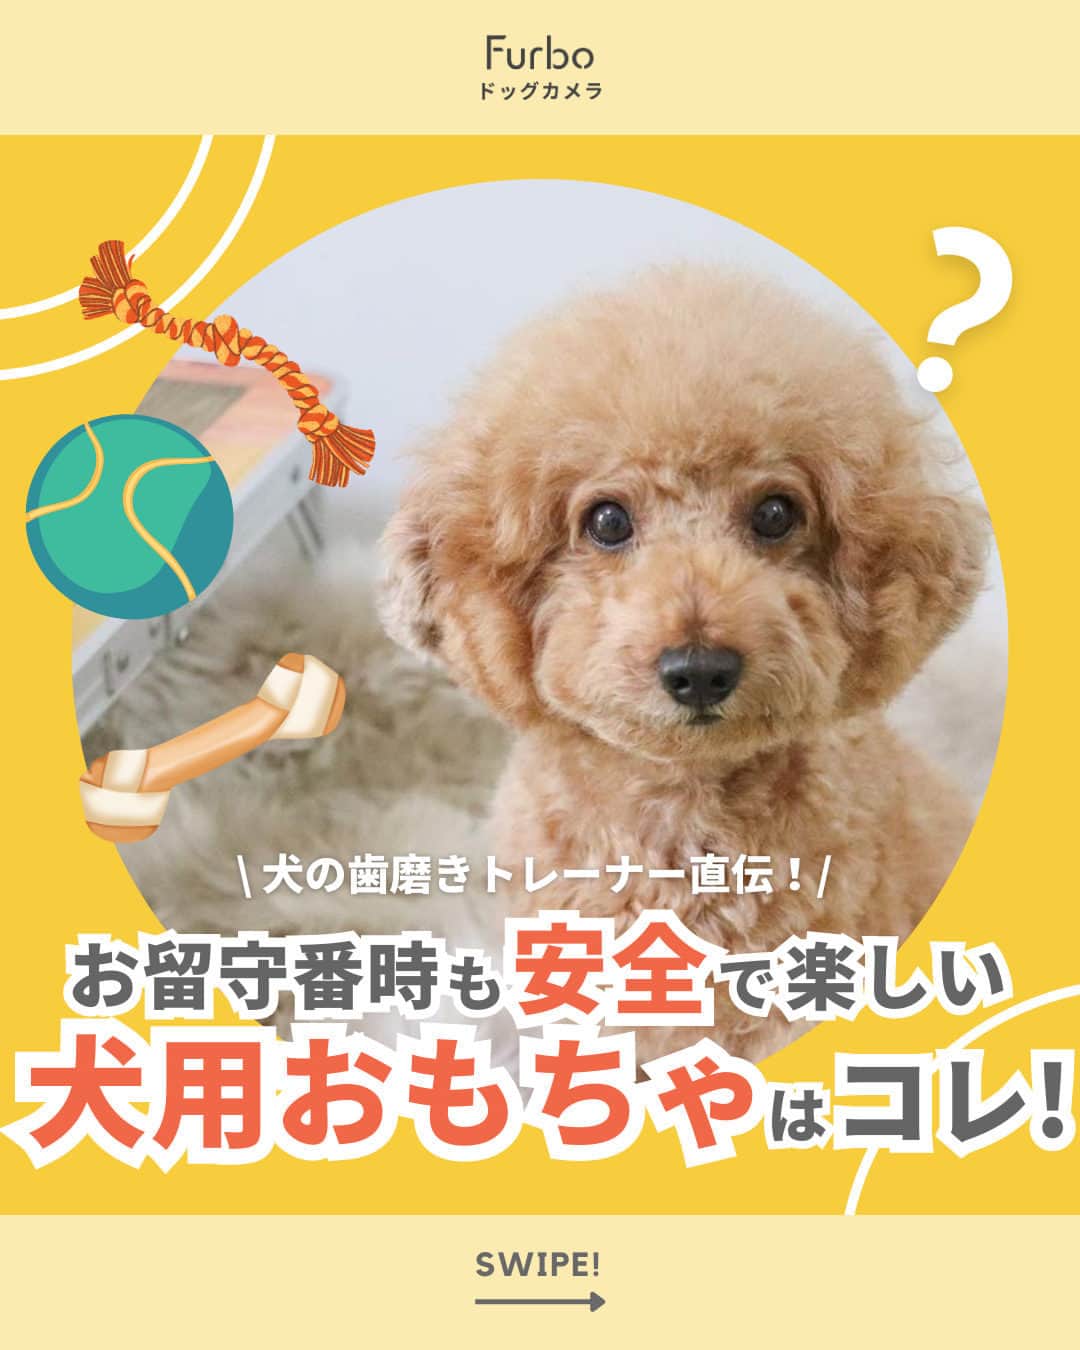 Furbo ドッグカメラのインスタグラム：「@furbo_japan 👈 他の投稿はこちらから  犬の歯磨きトレーナー直伝！✨ お留守番時も安全で楽しい犬用おもちゃはコレ！🐶  こちらの投稿は、 犬の歯科衛生士🐾あーちゃん先生🪥 @puente_feliz  に執筆いただいたブログ記事、  「犬の歯磨きトレーナー直伝！ワンちゃん用おもちゃの注意点」 をもとに作成されています💡  ところであなたの愛犬は、 おもちゃで「遊ぶ？」「遊ばない？」🤔 コメントで教えてくださいね🐕💛  Special Thaks to @sakumaru1213 📸 ＿＿＿＿＿＿＿＿＿＿＿＿＿＿＿＿＿＿＿＿＿＿  「愛犬のお留守番が心配で 少しの外出でも不安になる🥲」 そんなお悩みを抱えているあなたを……  No.1ペットカメラの #Furbo ドッグカメラ 360°ビューが サポートします！💛  ✦ 回転360°ビューカメラ&自動追尾機能つき ✦ リモート操作可能のおやつ機能 ✦ カラーモードを新たに搭載した暗視機能 ✦ 超クリアな双方向会話で愛犬とおしゃべり 　　　　　　　　　　　　　　　　etc… 最安値プランは公式サイト限定🤭  プロフィールのリンクから まずは価格を比較してみてね🐶🐱✨ ▶︎ @furbo_japan  #ファーボ #ドッグカメラ #ペットカメラ #見守りカメラ #お留守番カメラ #お留守番犬 #犬の留守番 #お留守番ありがとう #犬好きな人と繋がりたい #犬すたぐらむ #犬のおもちゃ #犬おもちゃ #犬グッズ #トイプードル #toypoodle」